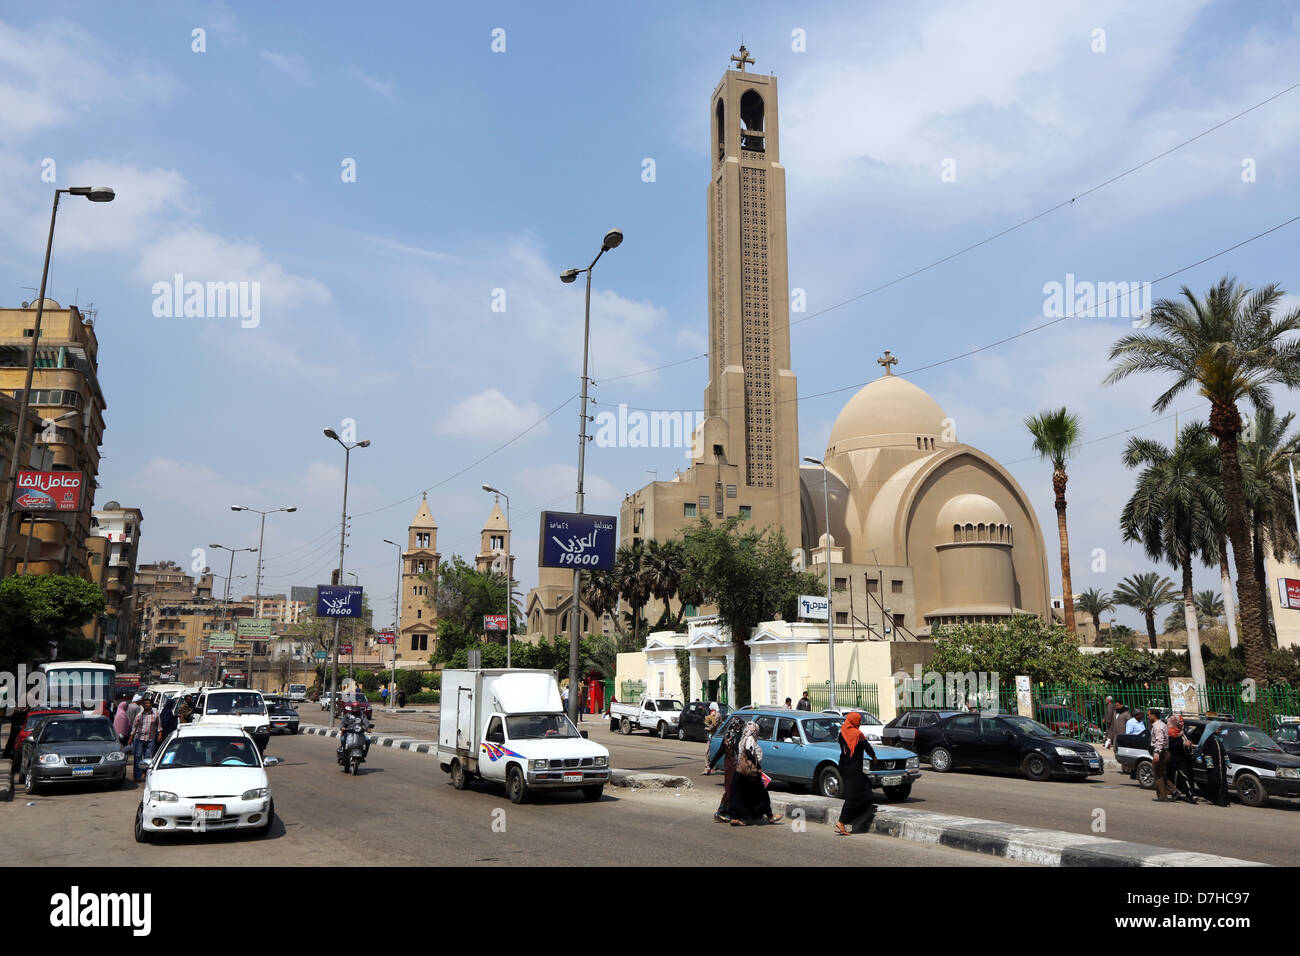 La Cathédrale Saint Marc du Caire, siège du Pape Tawadros II, le chef de l'Église copte d'Égypte Banque D'Images